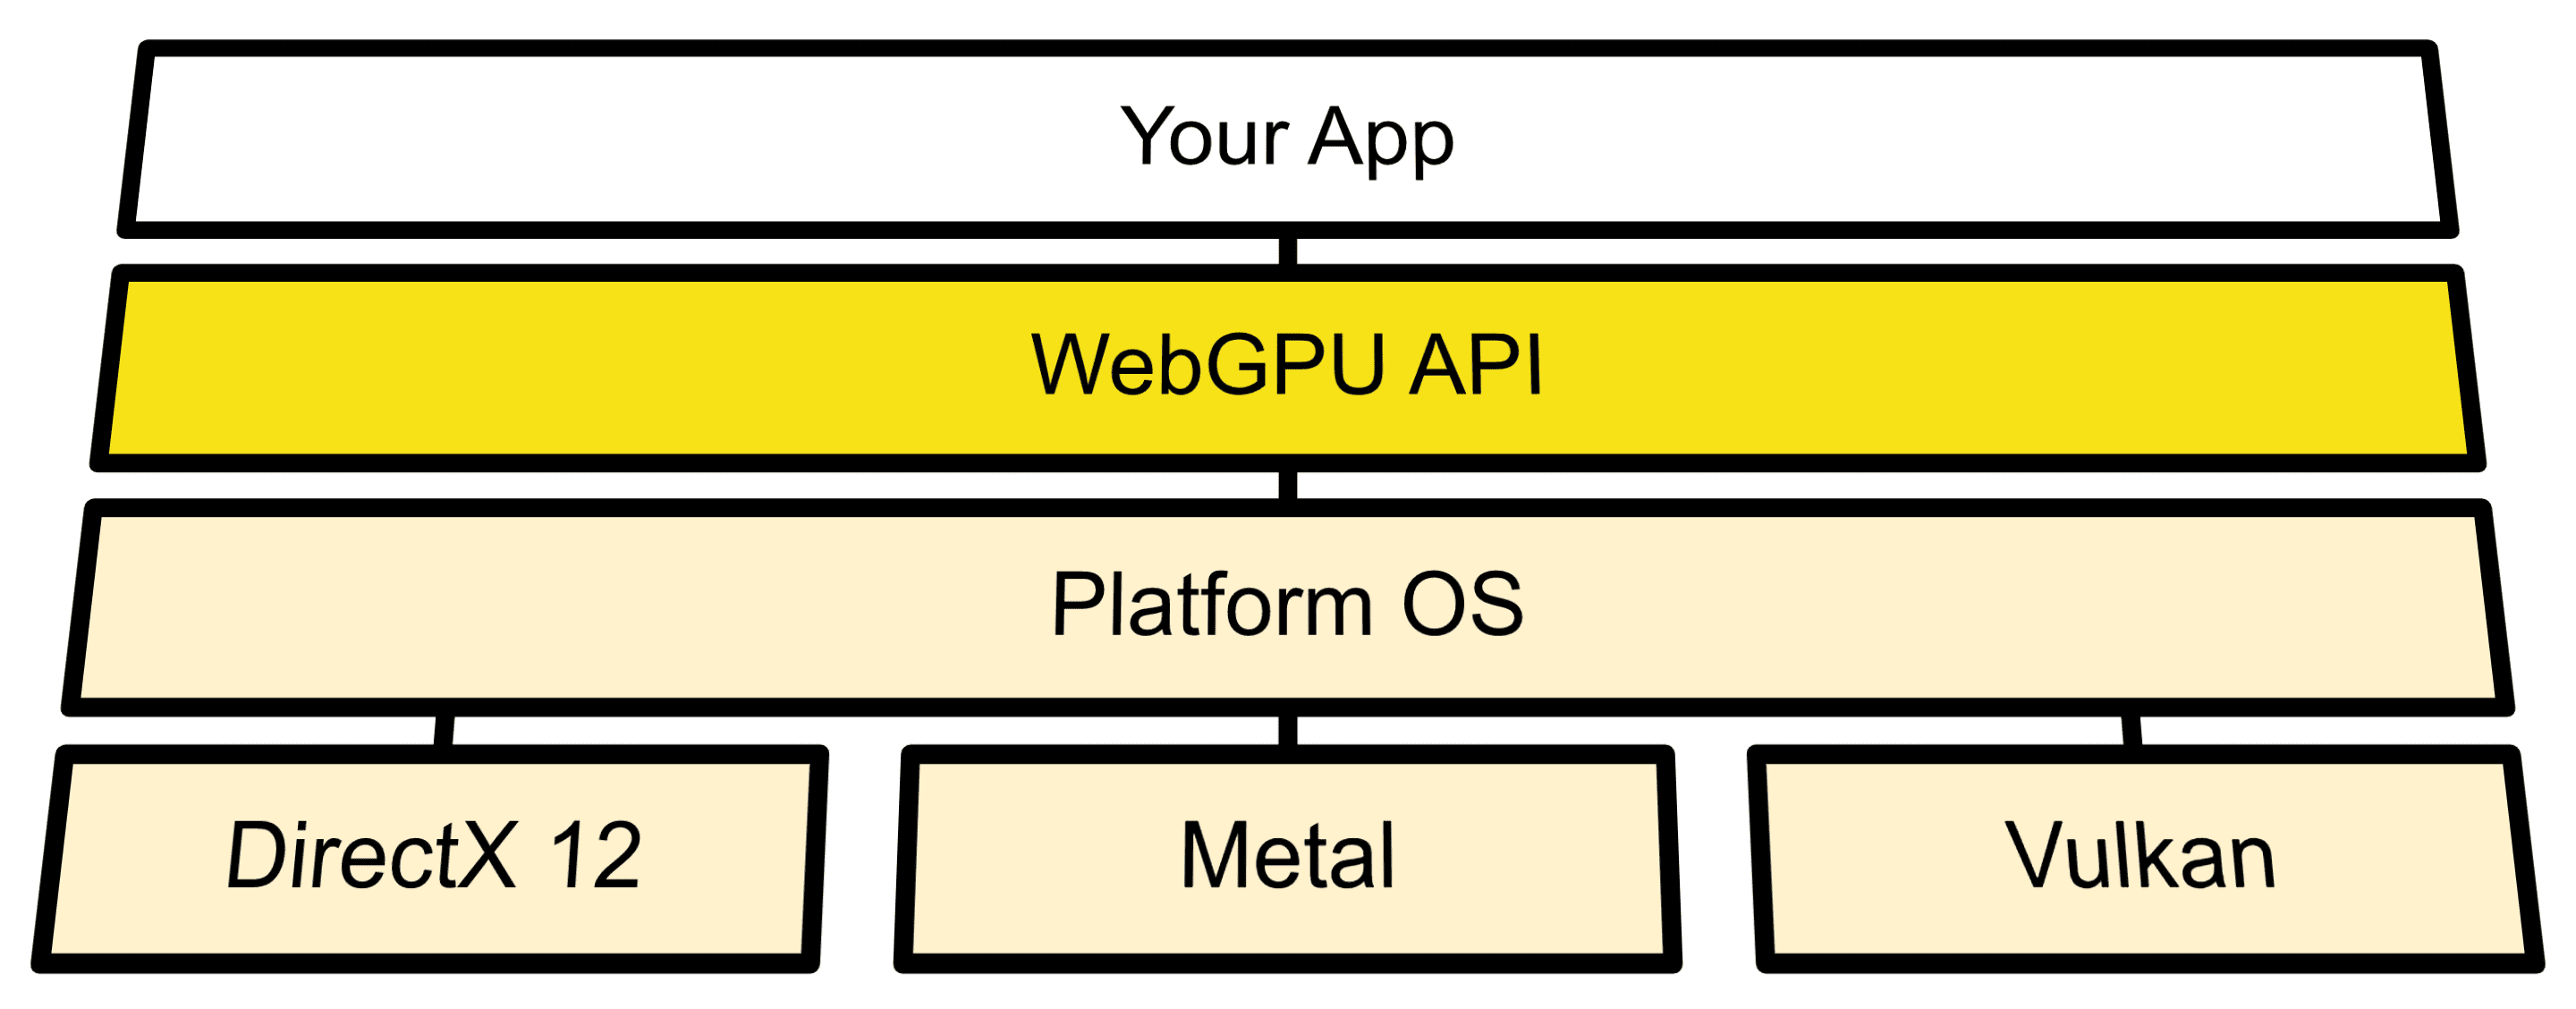 แผนภาพสถาปัตยกรรมแสดงการเชื่อมต่อ WebGPU ระหว่าง OS API กับ Direct3D 12, Metal และ Vulkan